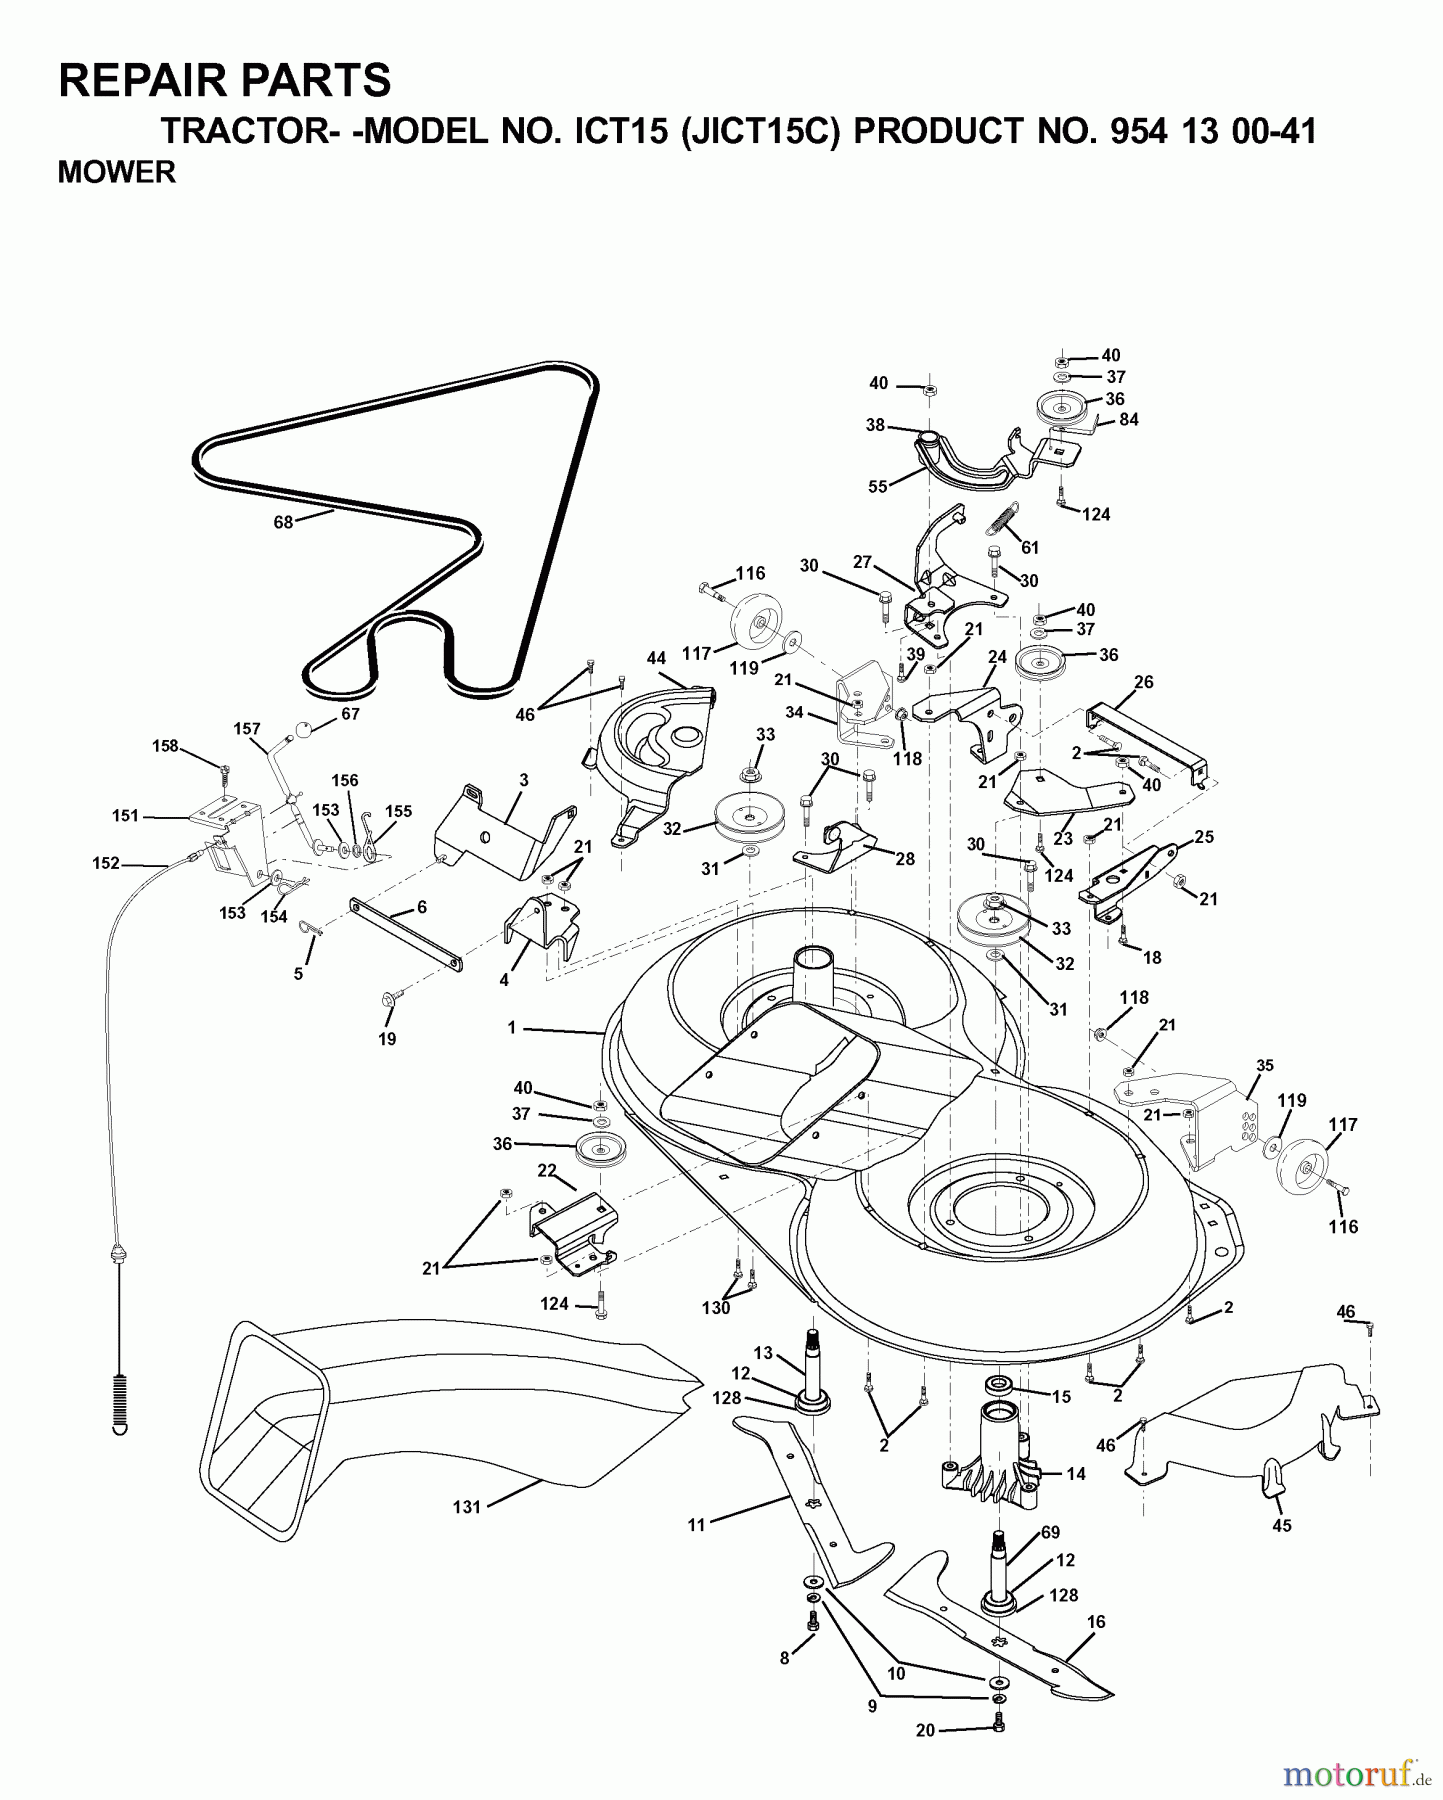  Jonsered Rasen  und Garten Traktoren ICT15 (JICT15C, 954130041) - Jonsered Lawn & Garden Tractor (2000-04) MOWER DECK / CUTTING DECK